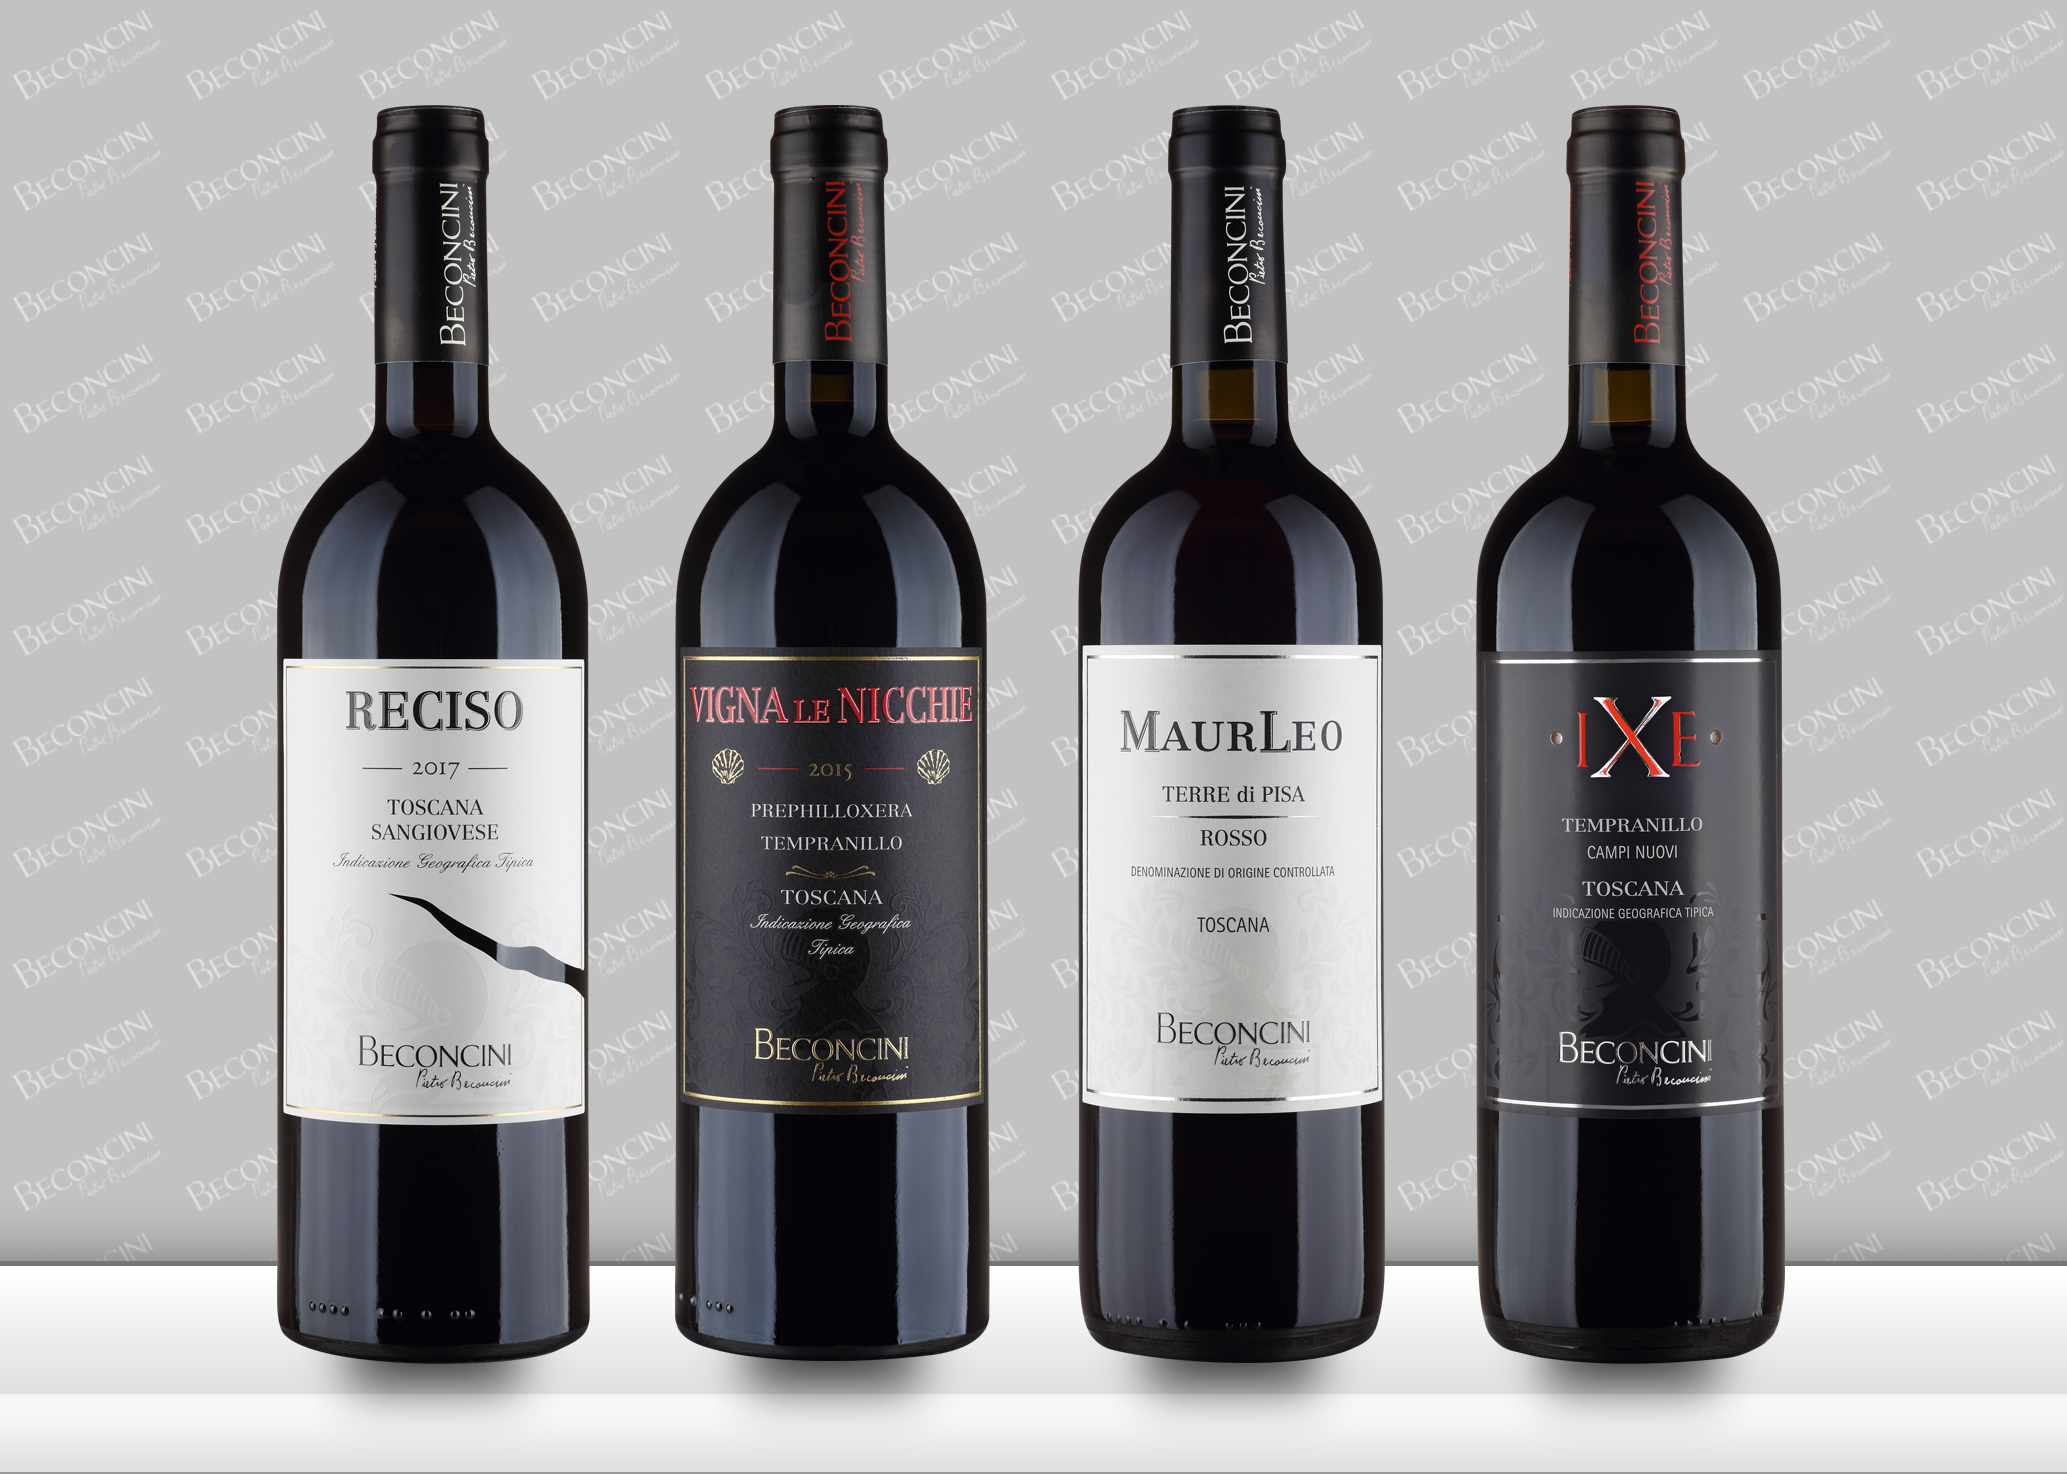 UN ABITO CHE DESCRIVE IL VINO CHE VESTE: Beconcini racconta il suo vino attraverso le nuove etichette studiate ad hoc